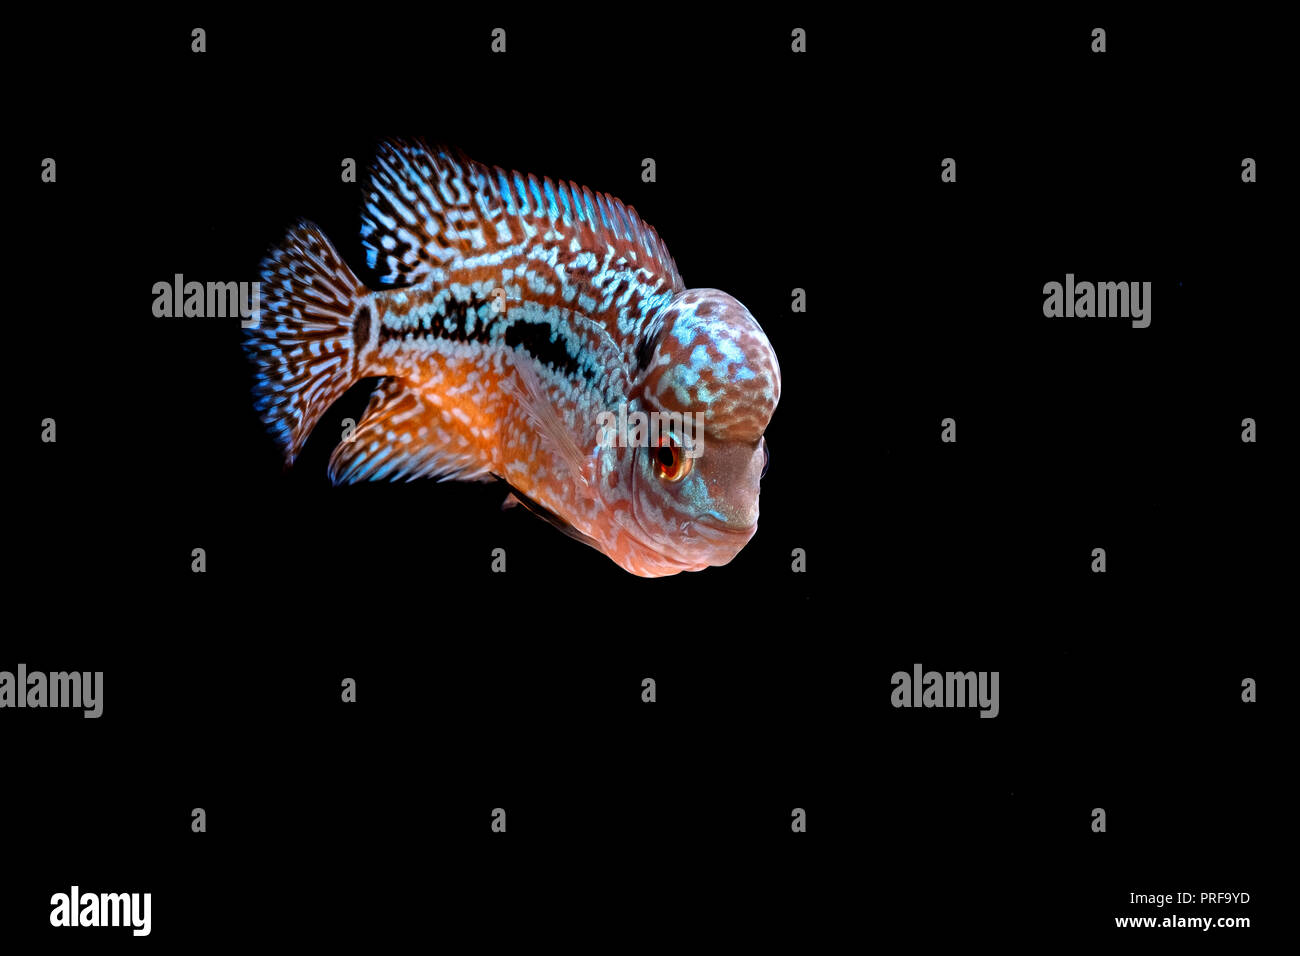 Cichlids in aquarium Stock Photo